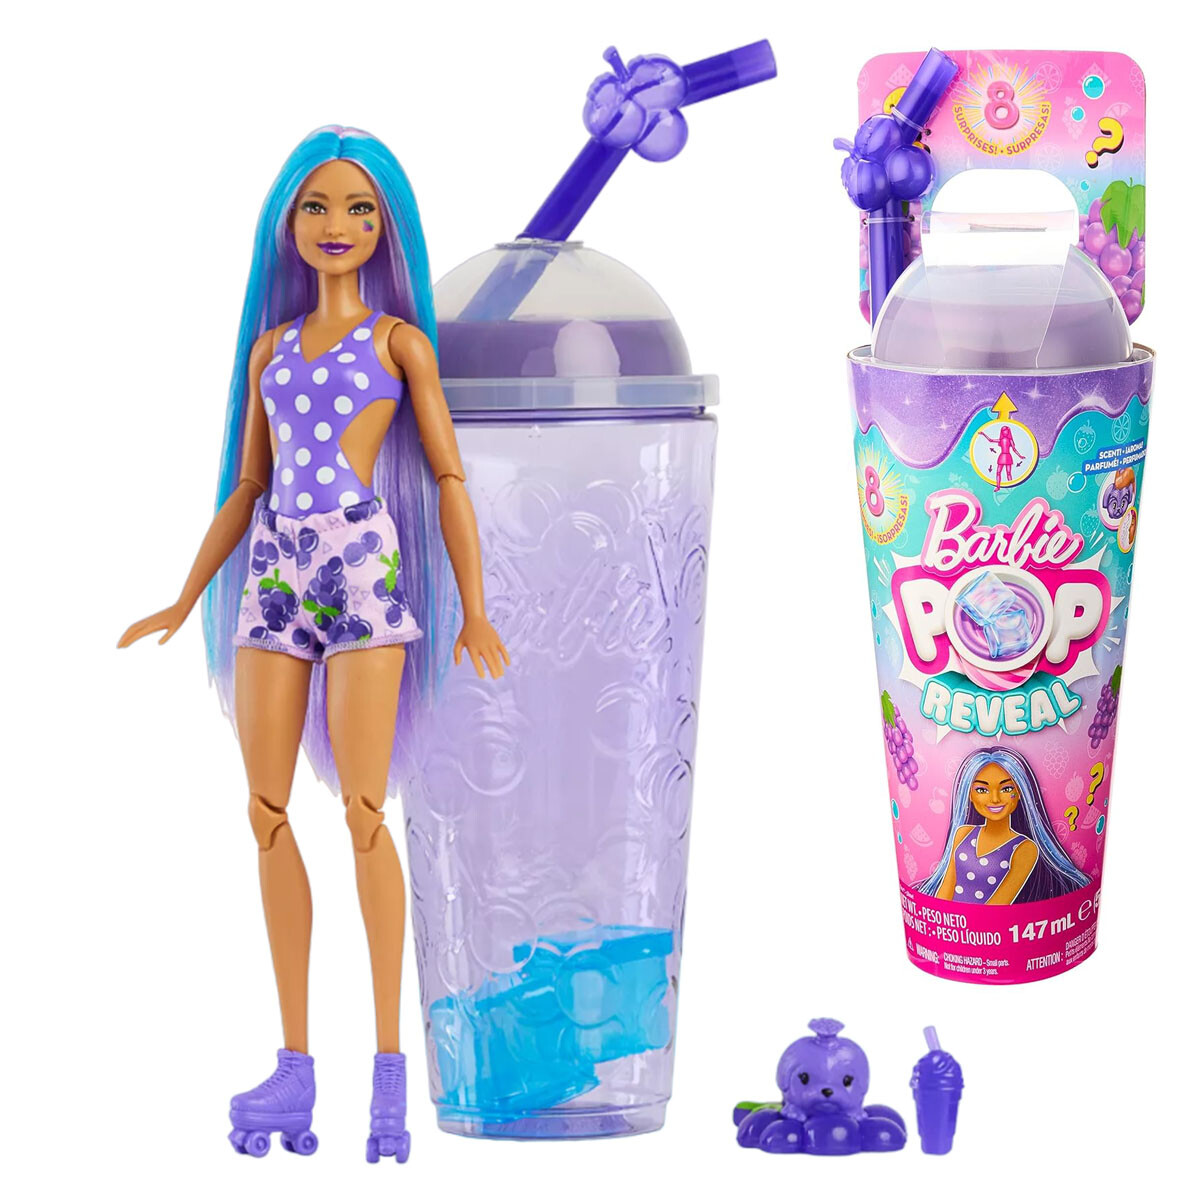 Muñeca Barbie Pop Reveal + Vaso Con Accesorios - Violeta 